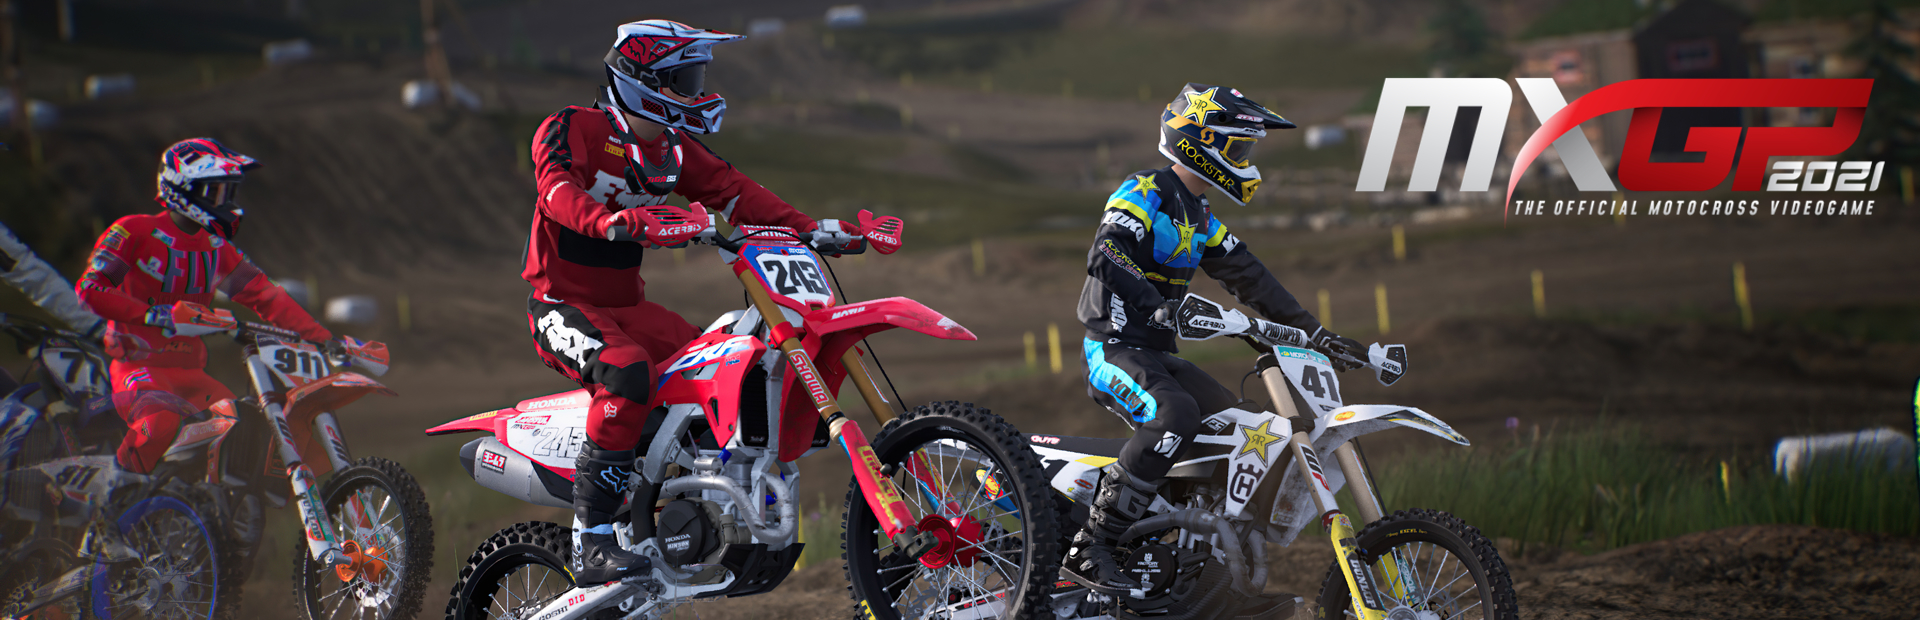 دانلود بازی MXGP 2021 - The Official Motocross Videogame برای PC | گیمباتو